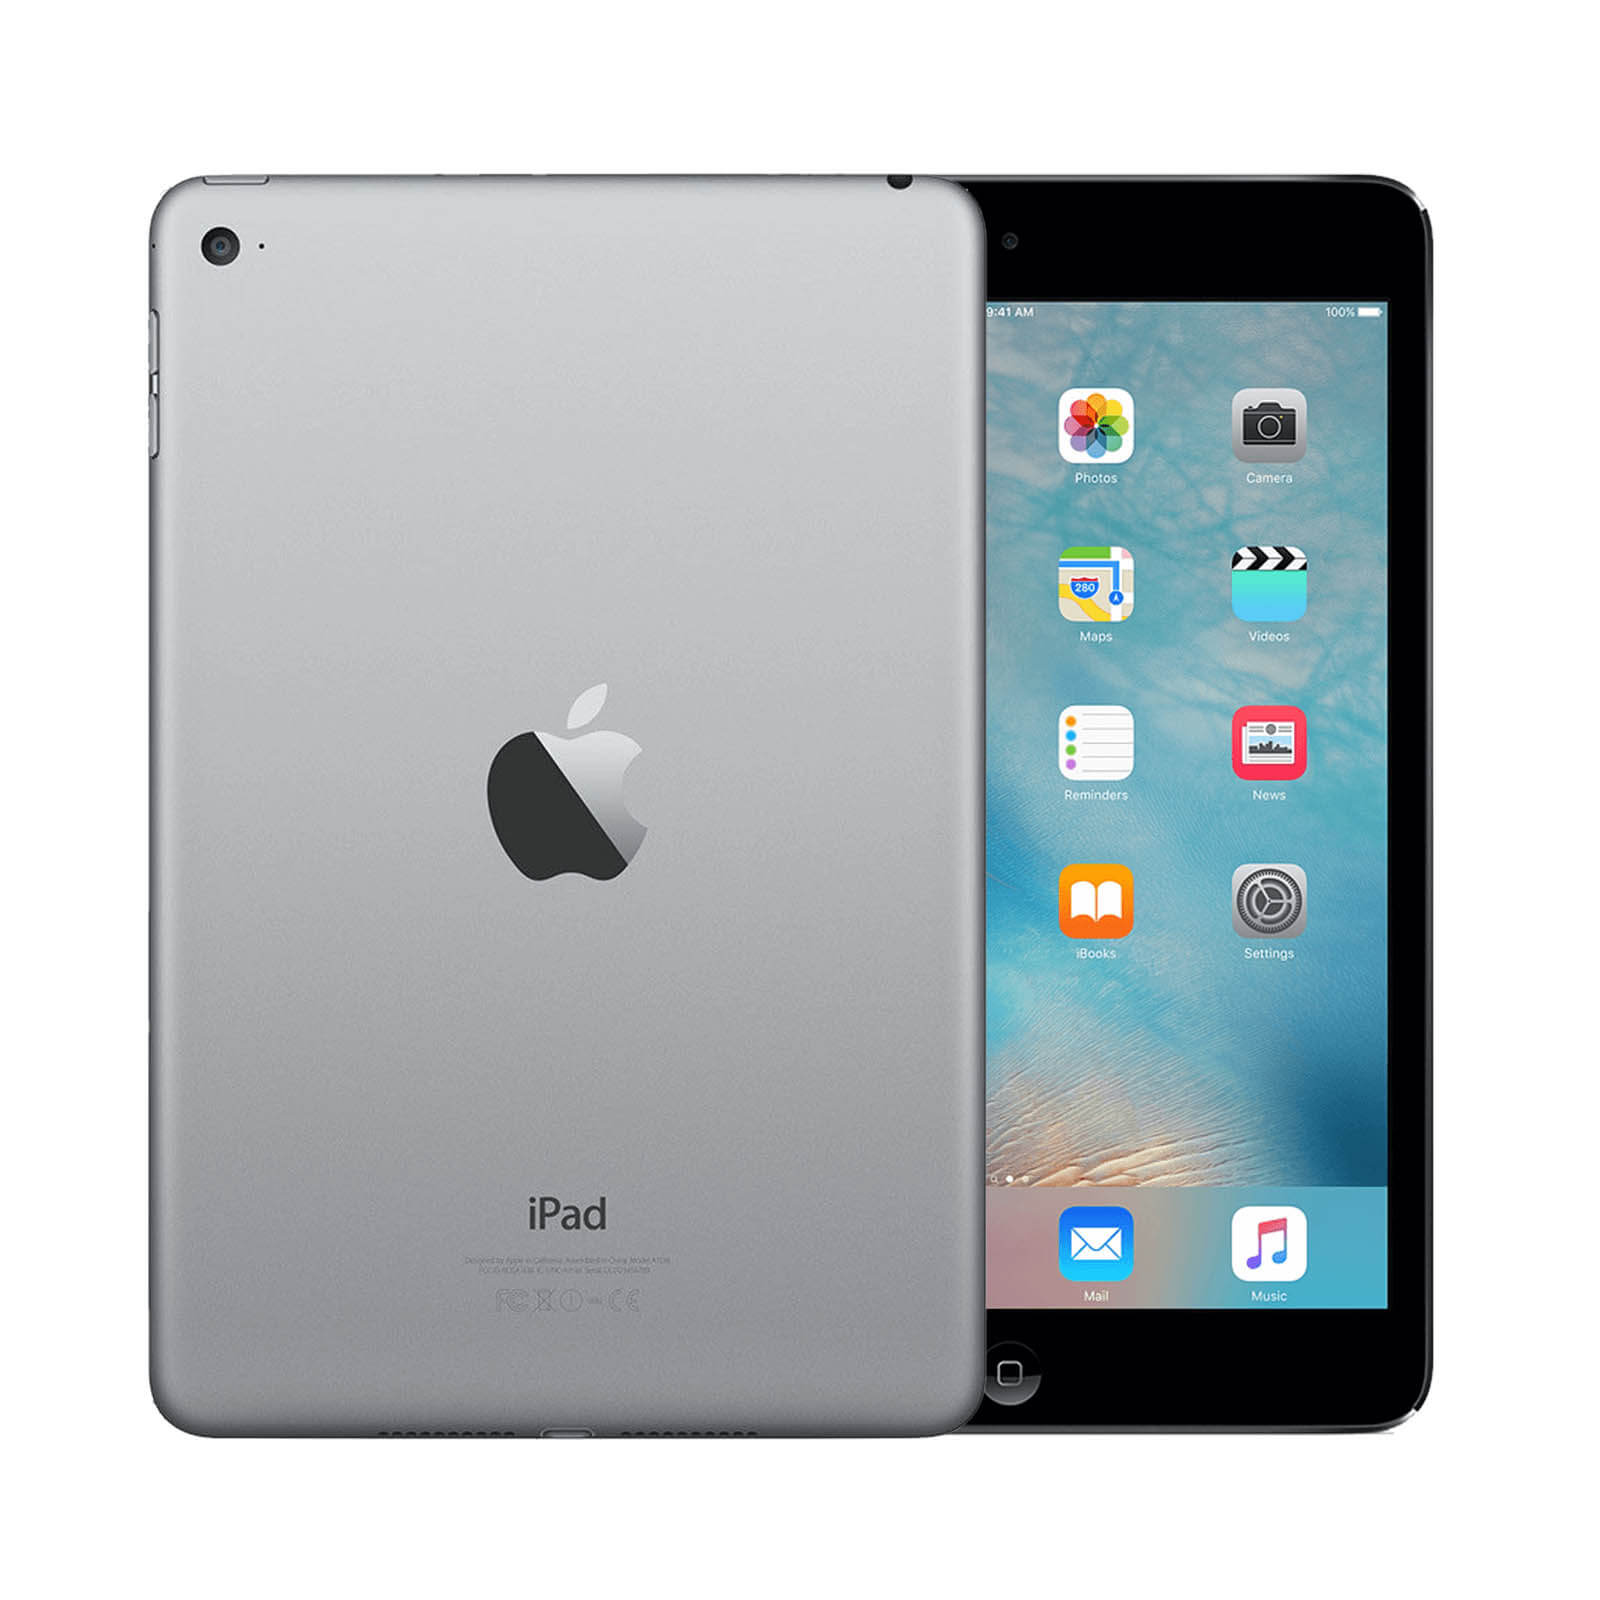 Apple iPad Mini 4 16GB Space Grau WiFi - Gut